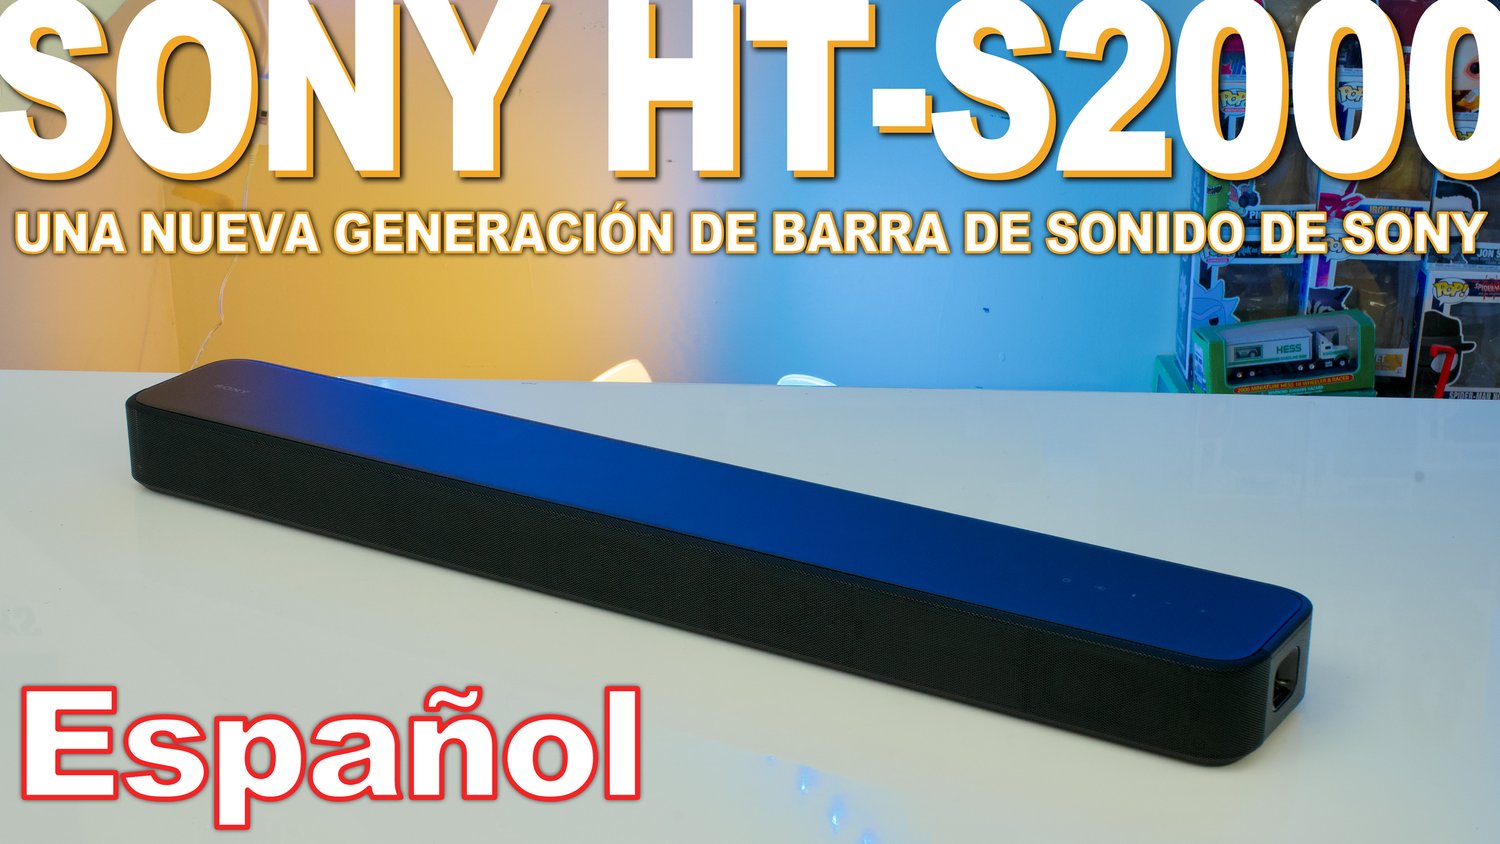 Sony HT-S2000 Review - Una nueva generación de barras de sonido de